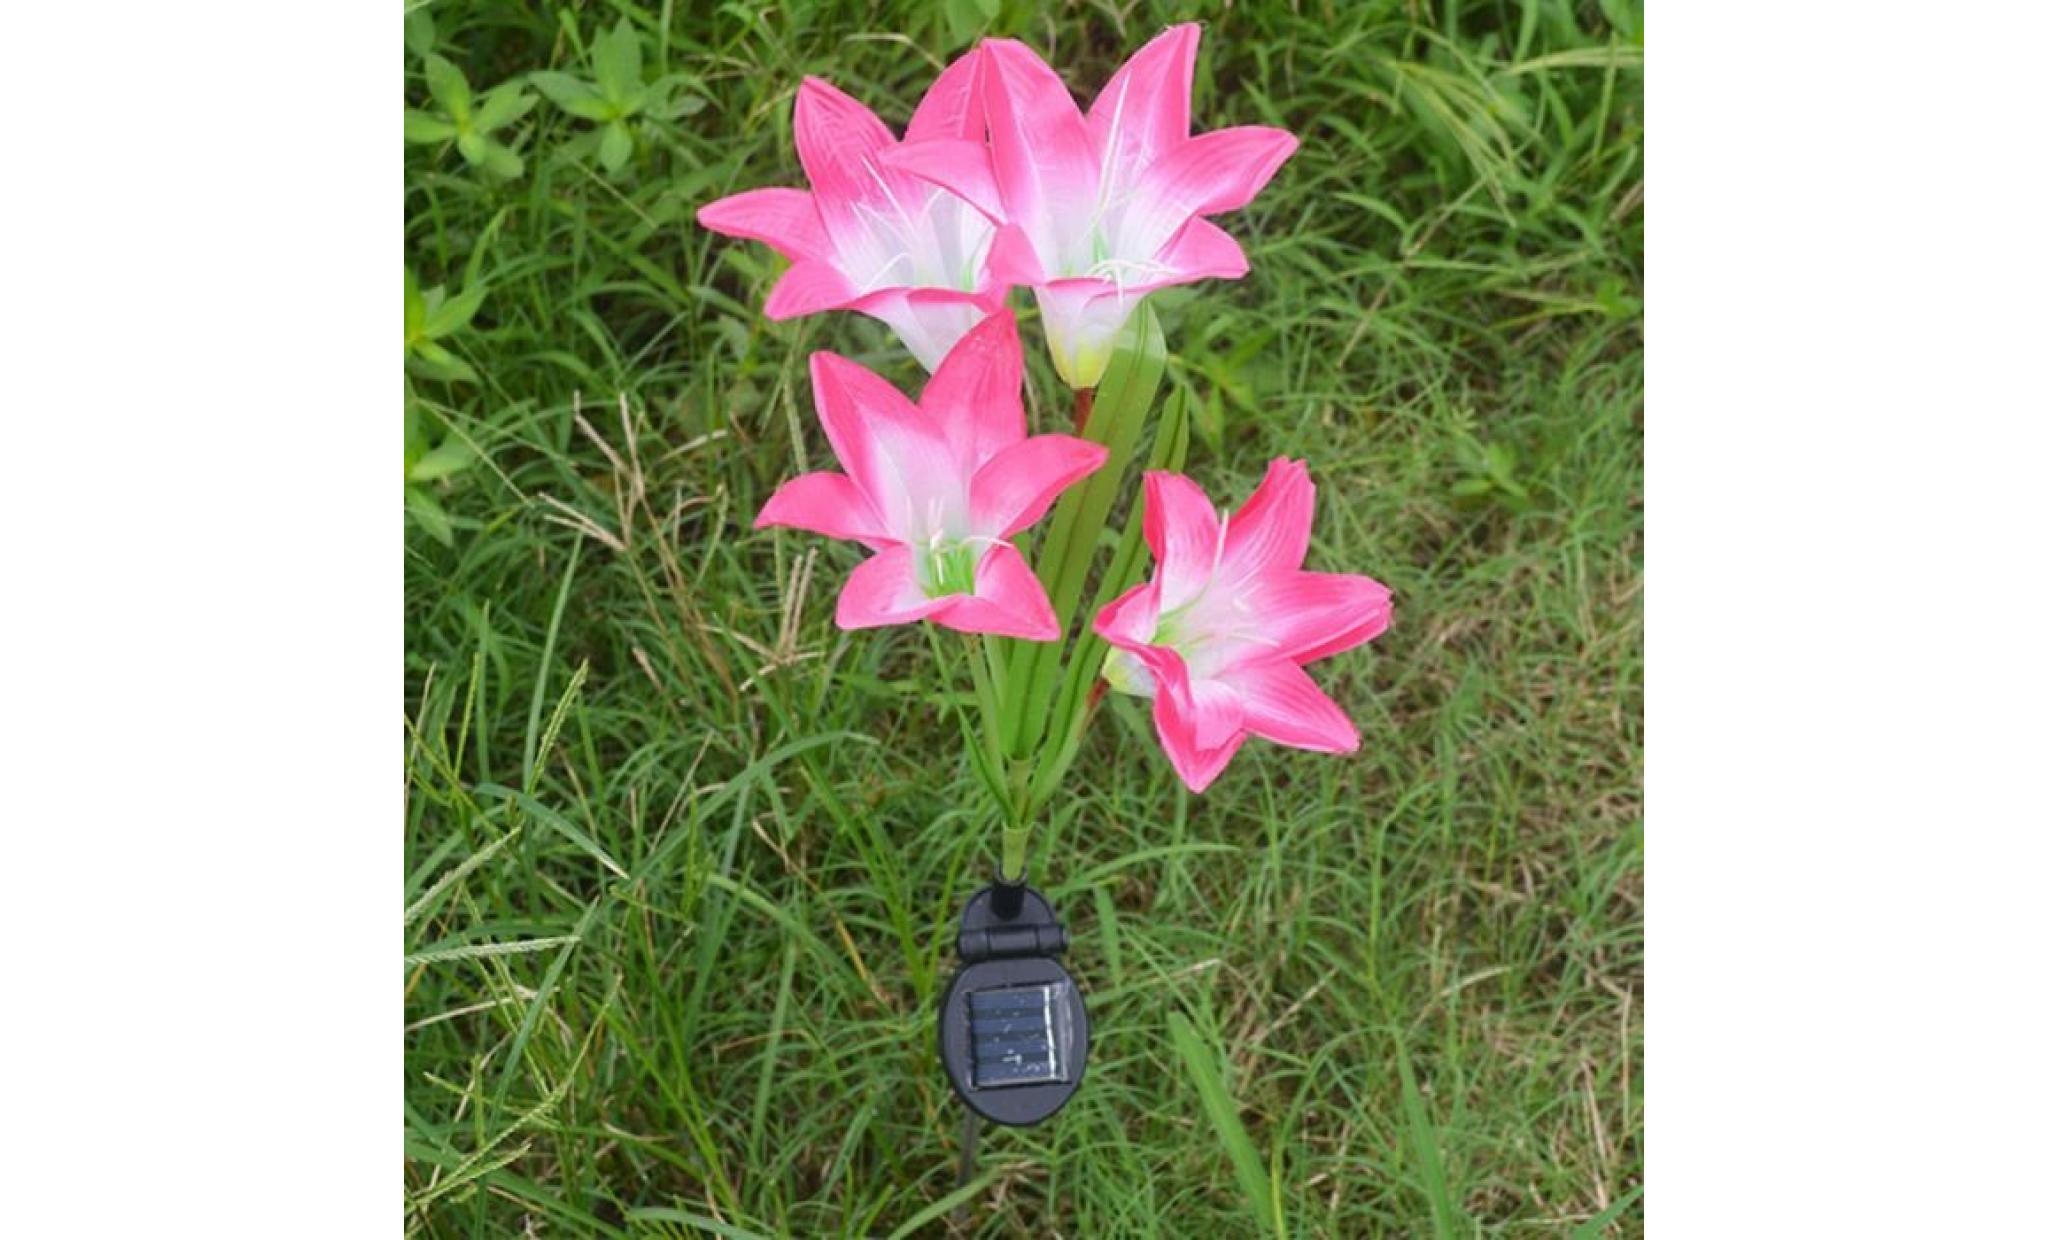 2 pièces lily flower garden powered solaire stake lumières fleurs artificielles led li639@ pas cher